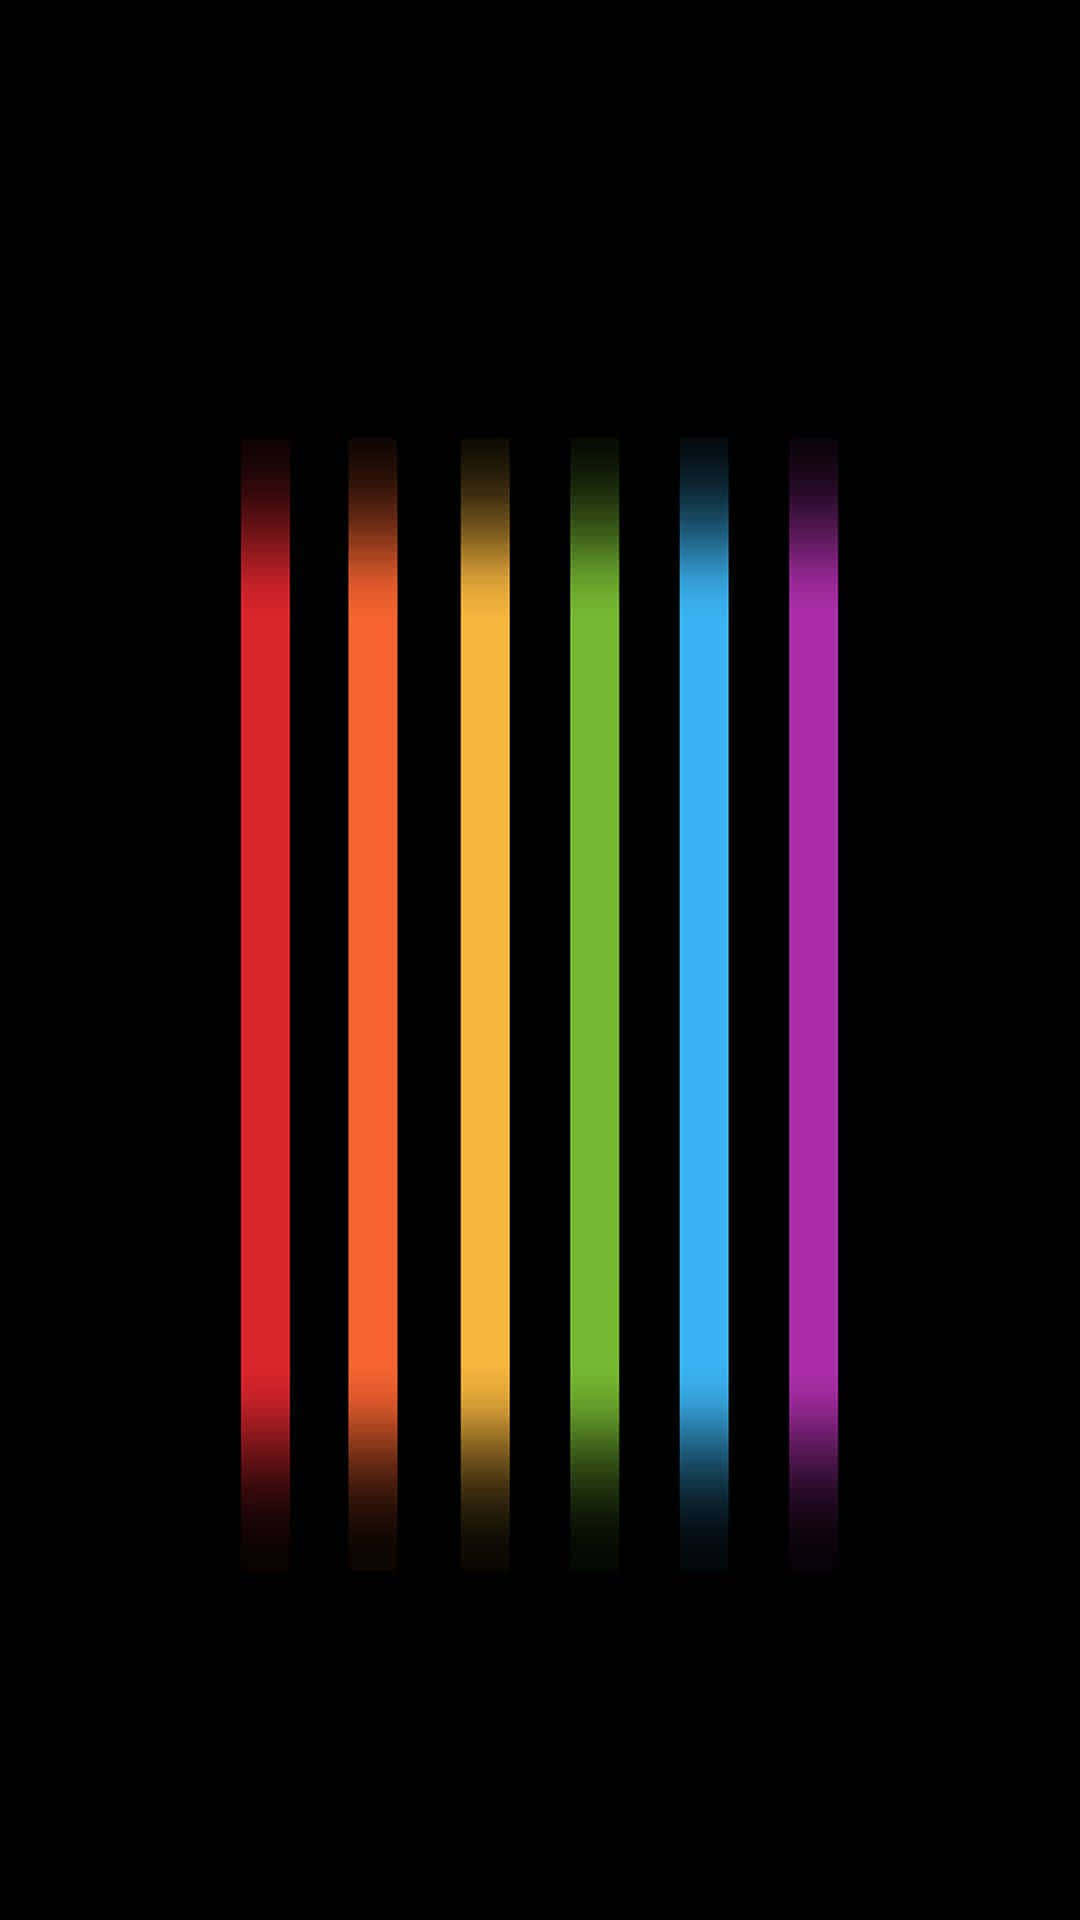 Líneasverticales De Colores Del Arcoíris Para Tu Escritorio Lgbtqi+. Fondo de pantalla